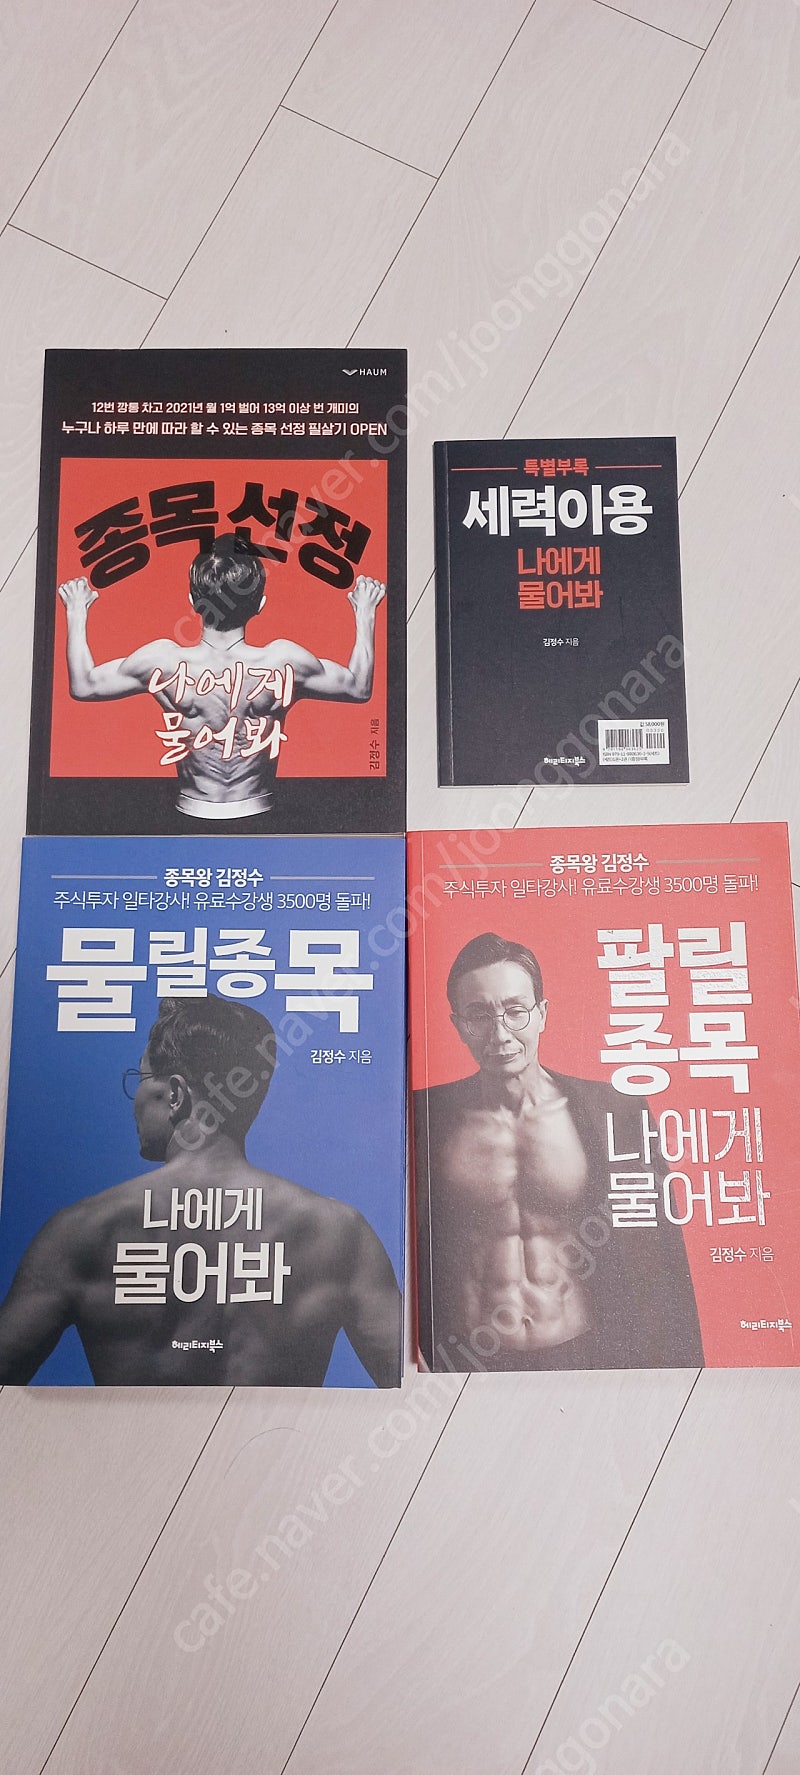 (주식책)종목왕 김정수 3종 새책 수준 싸게 팝니다